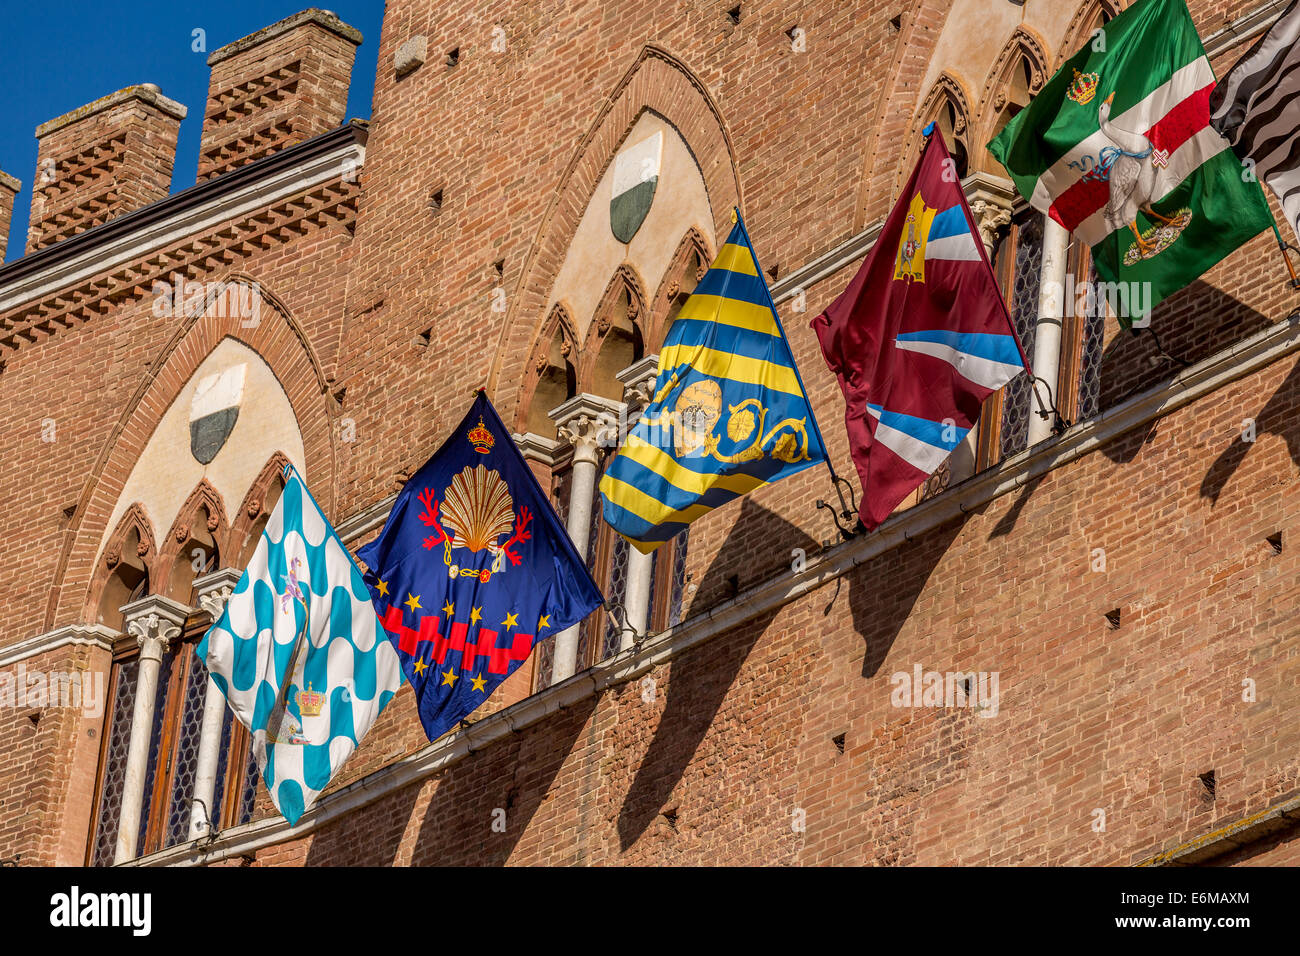 Siena el día de la carrera de caballos del Palio con banderas y pancartas decorando el ayuntamiento, Siena, Italia Foto de stock